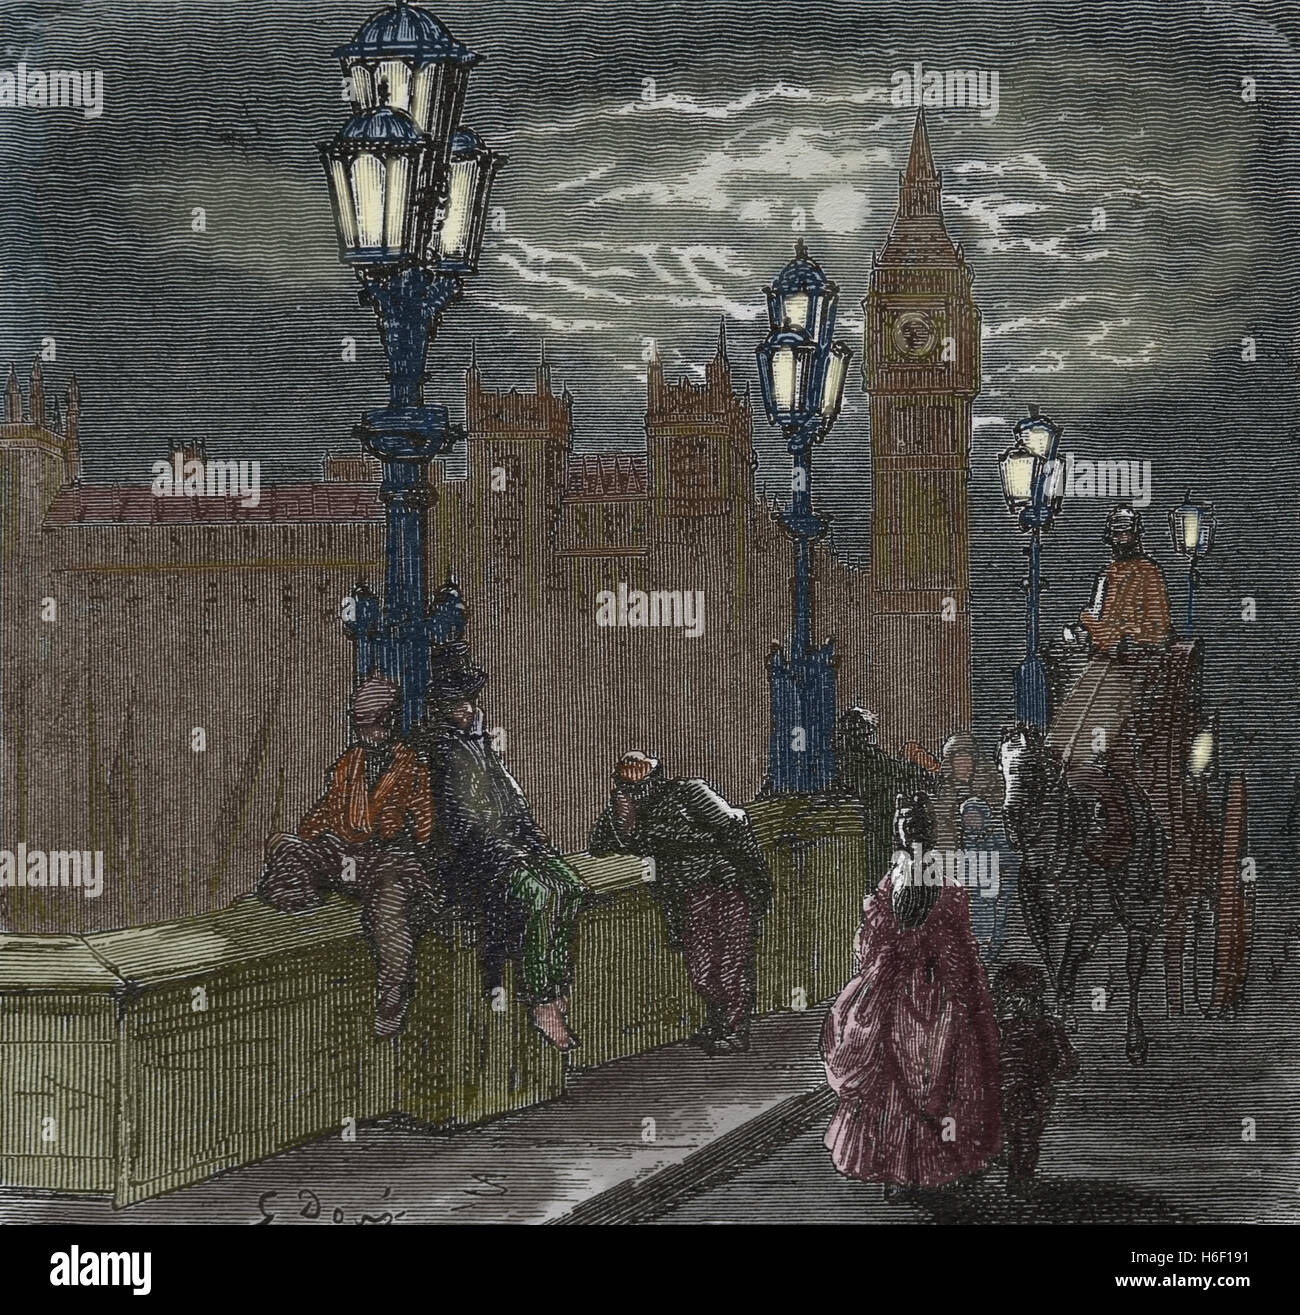 Vereinigtes Königreich. London. Viktorianische Embankment. Kupferstich von Dore, 19. c. Farbe. Stockfoto